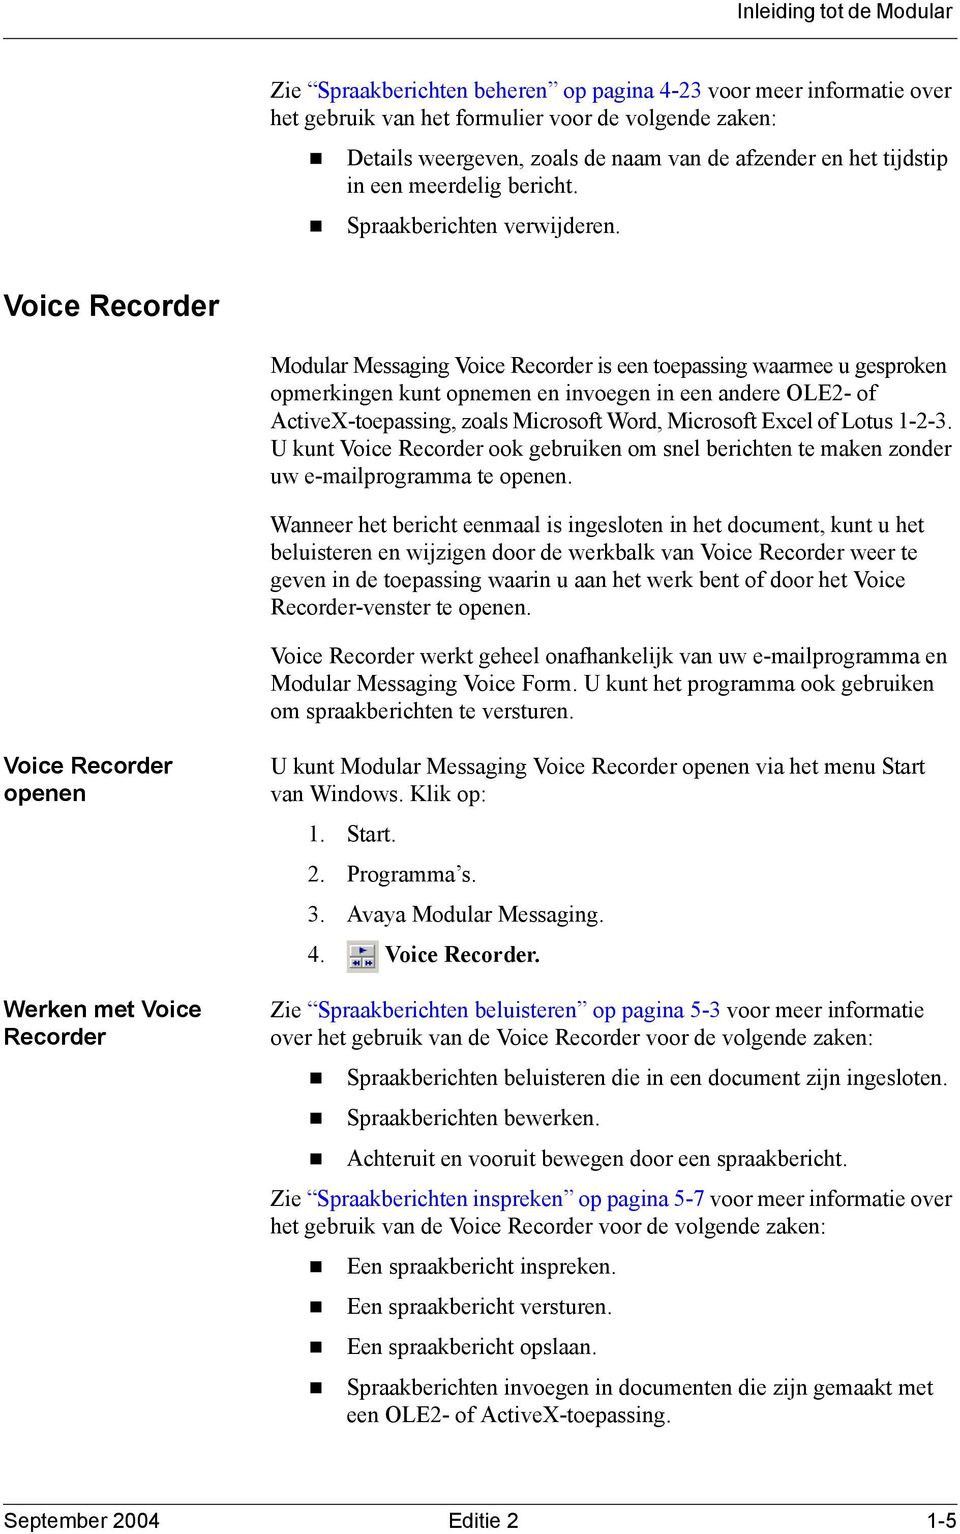 Voice Recorder Modular Messaging Voice Recorder is een toepassing waarmee u gesproken opmerkingen kunt opnemen en invoegen in een andere OLE2- of ActiveX-toepassing, zoals Microsoft Word, Microsoft